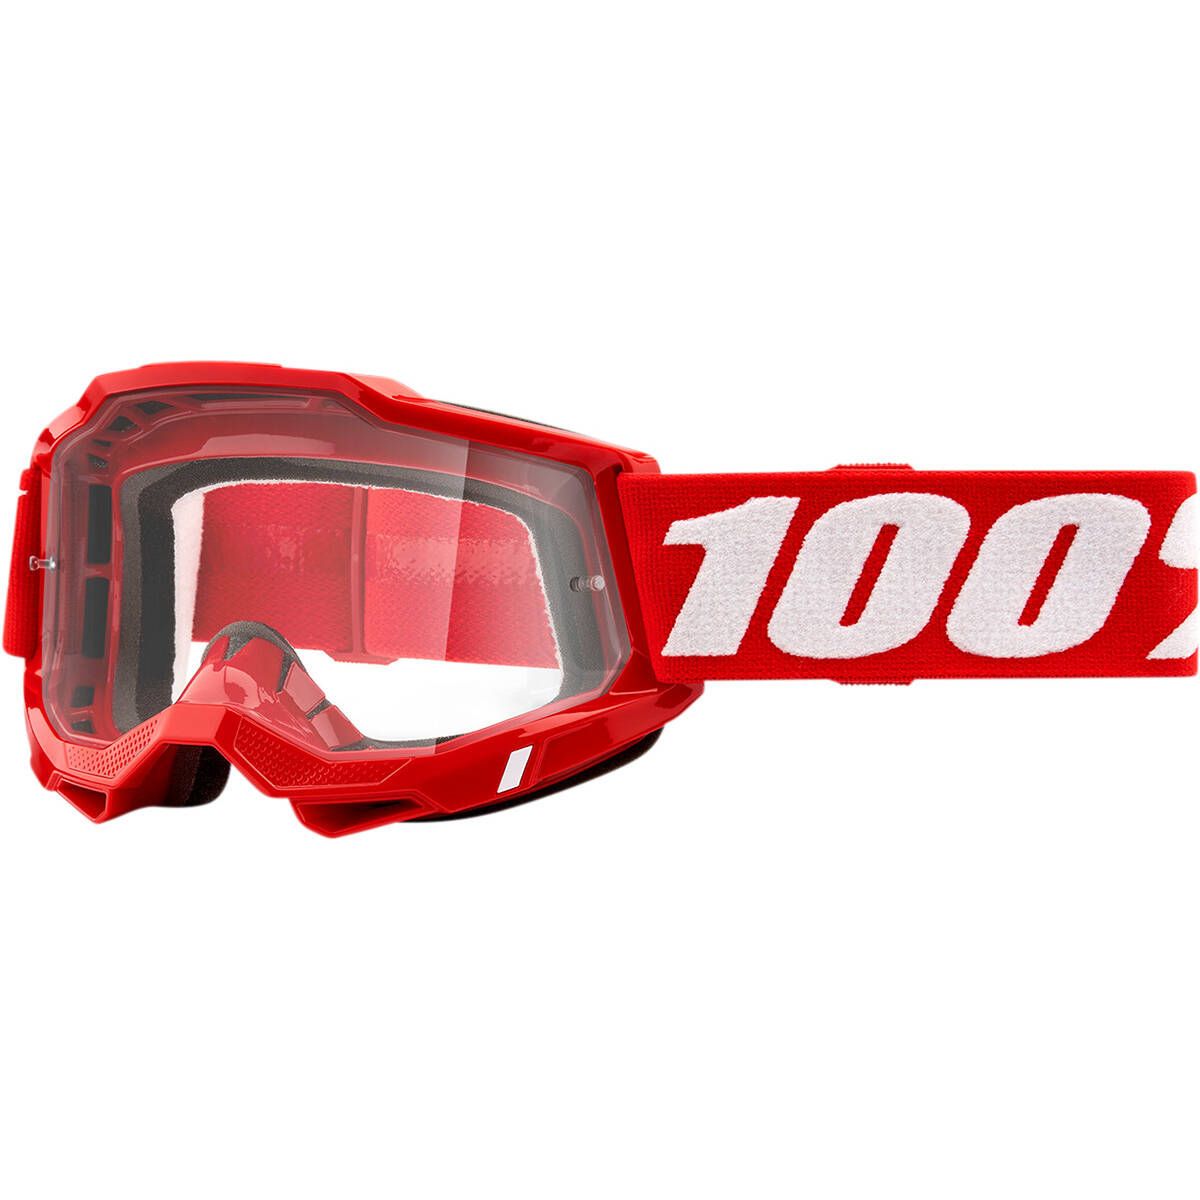 100% Accuri 2 OTG MX Goggles - Red